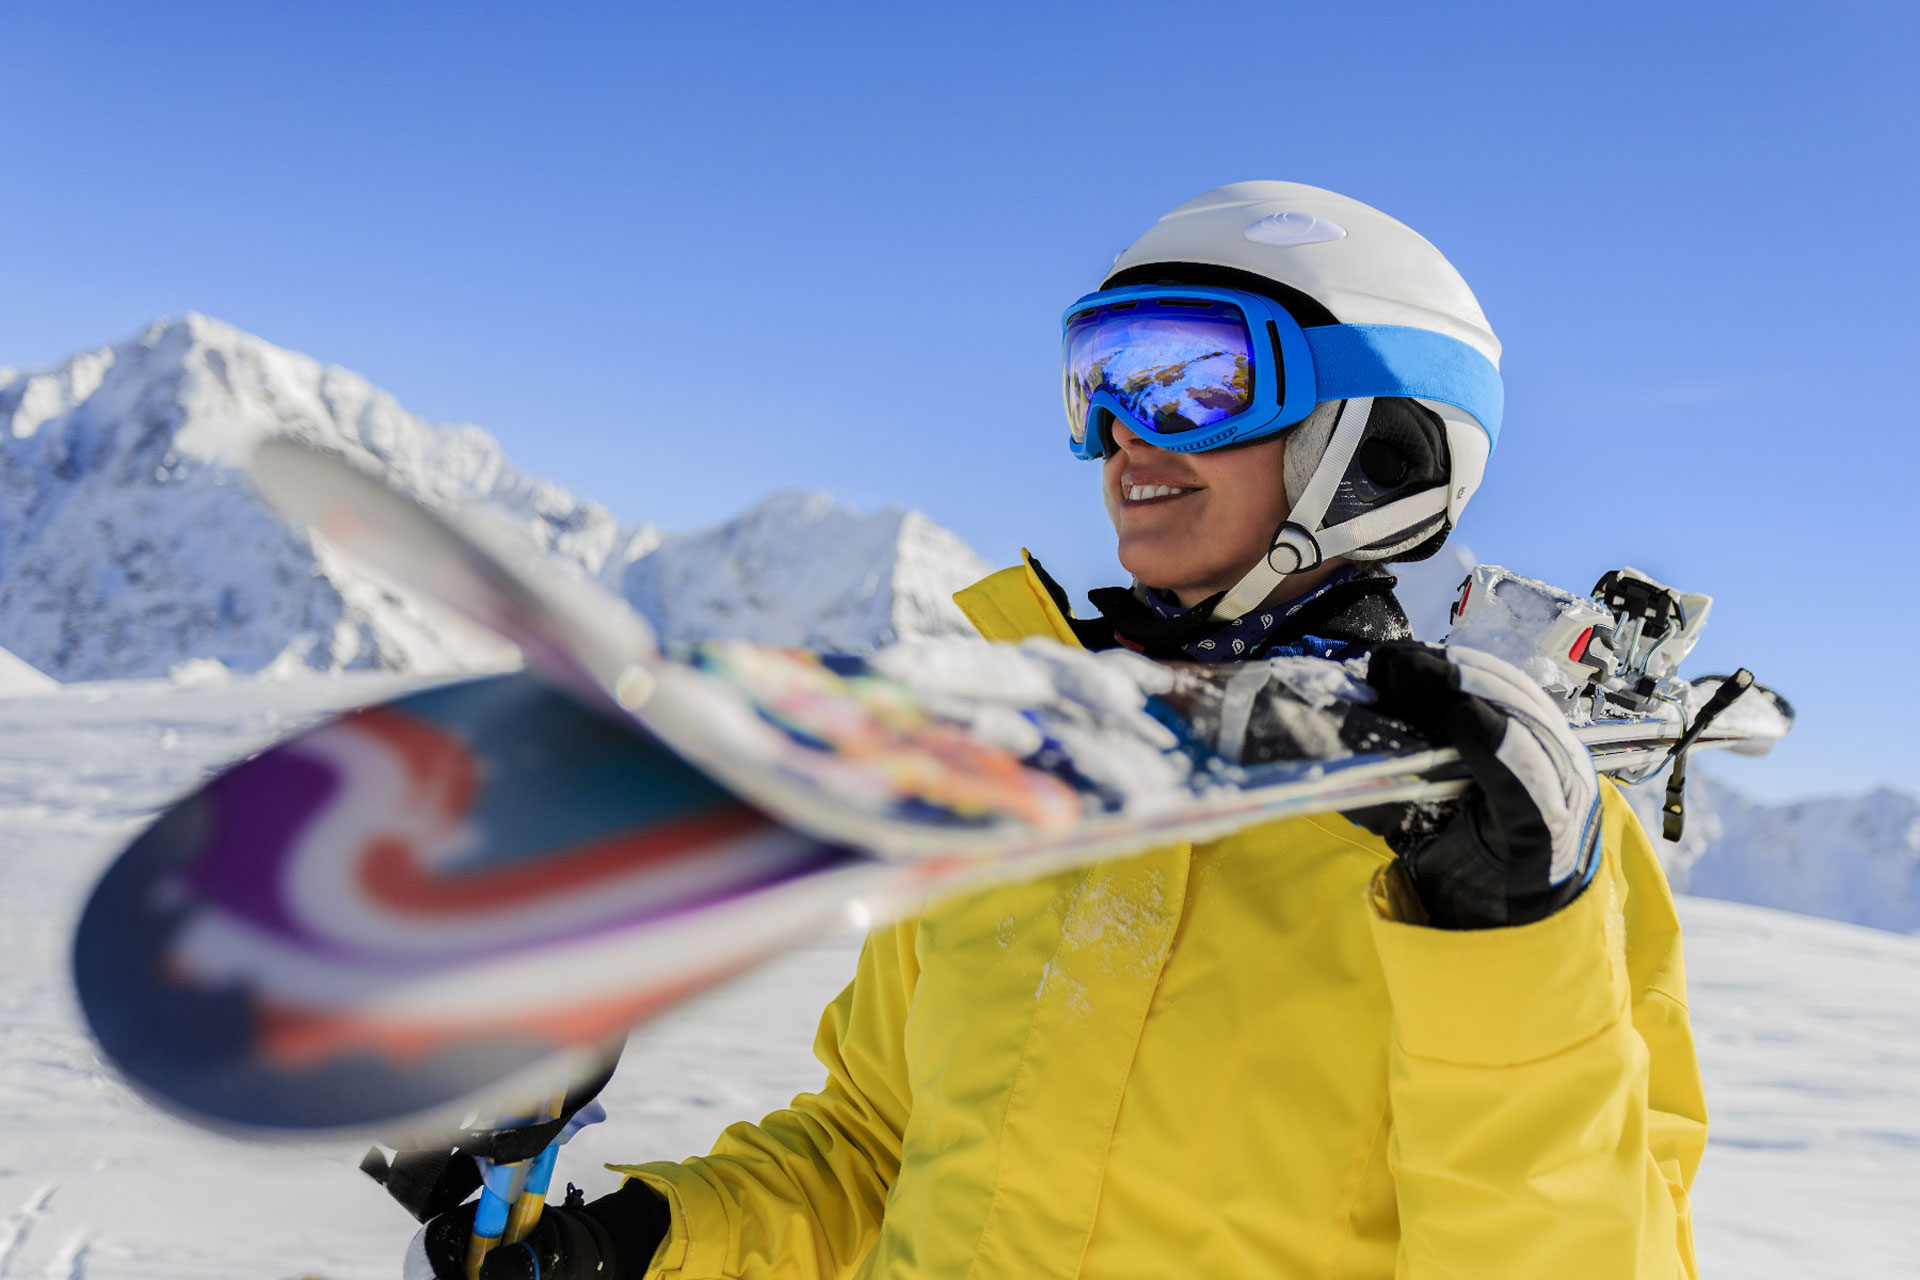 Veste et Pantalon de Ski  Equipement de Ski au meilleur prix